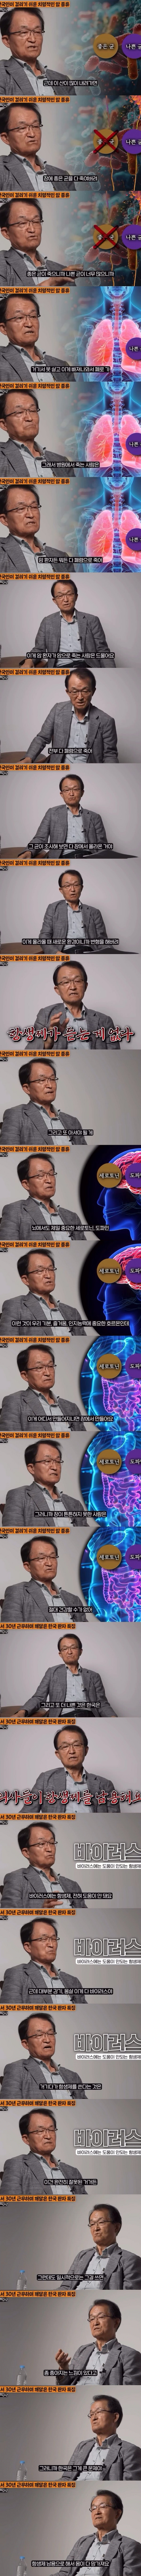 암센터 교수가 말하는 한국의 문제점  